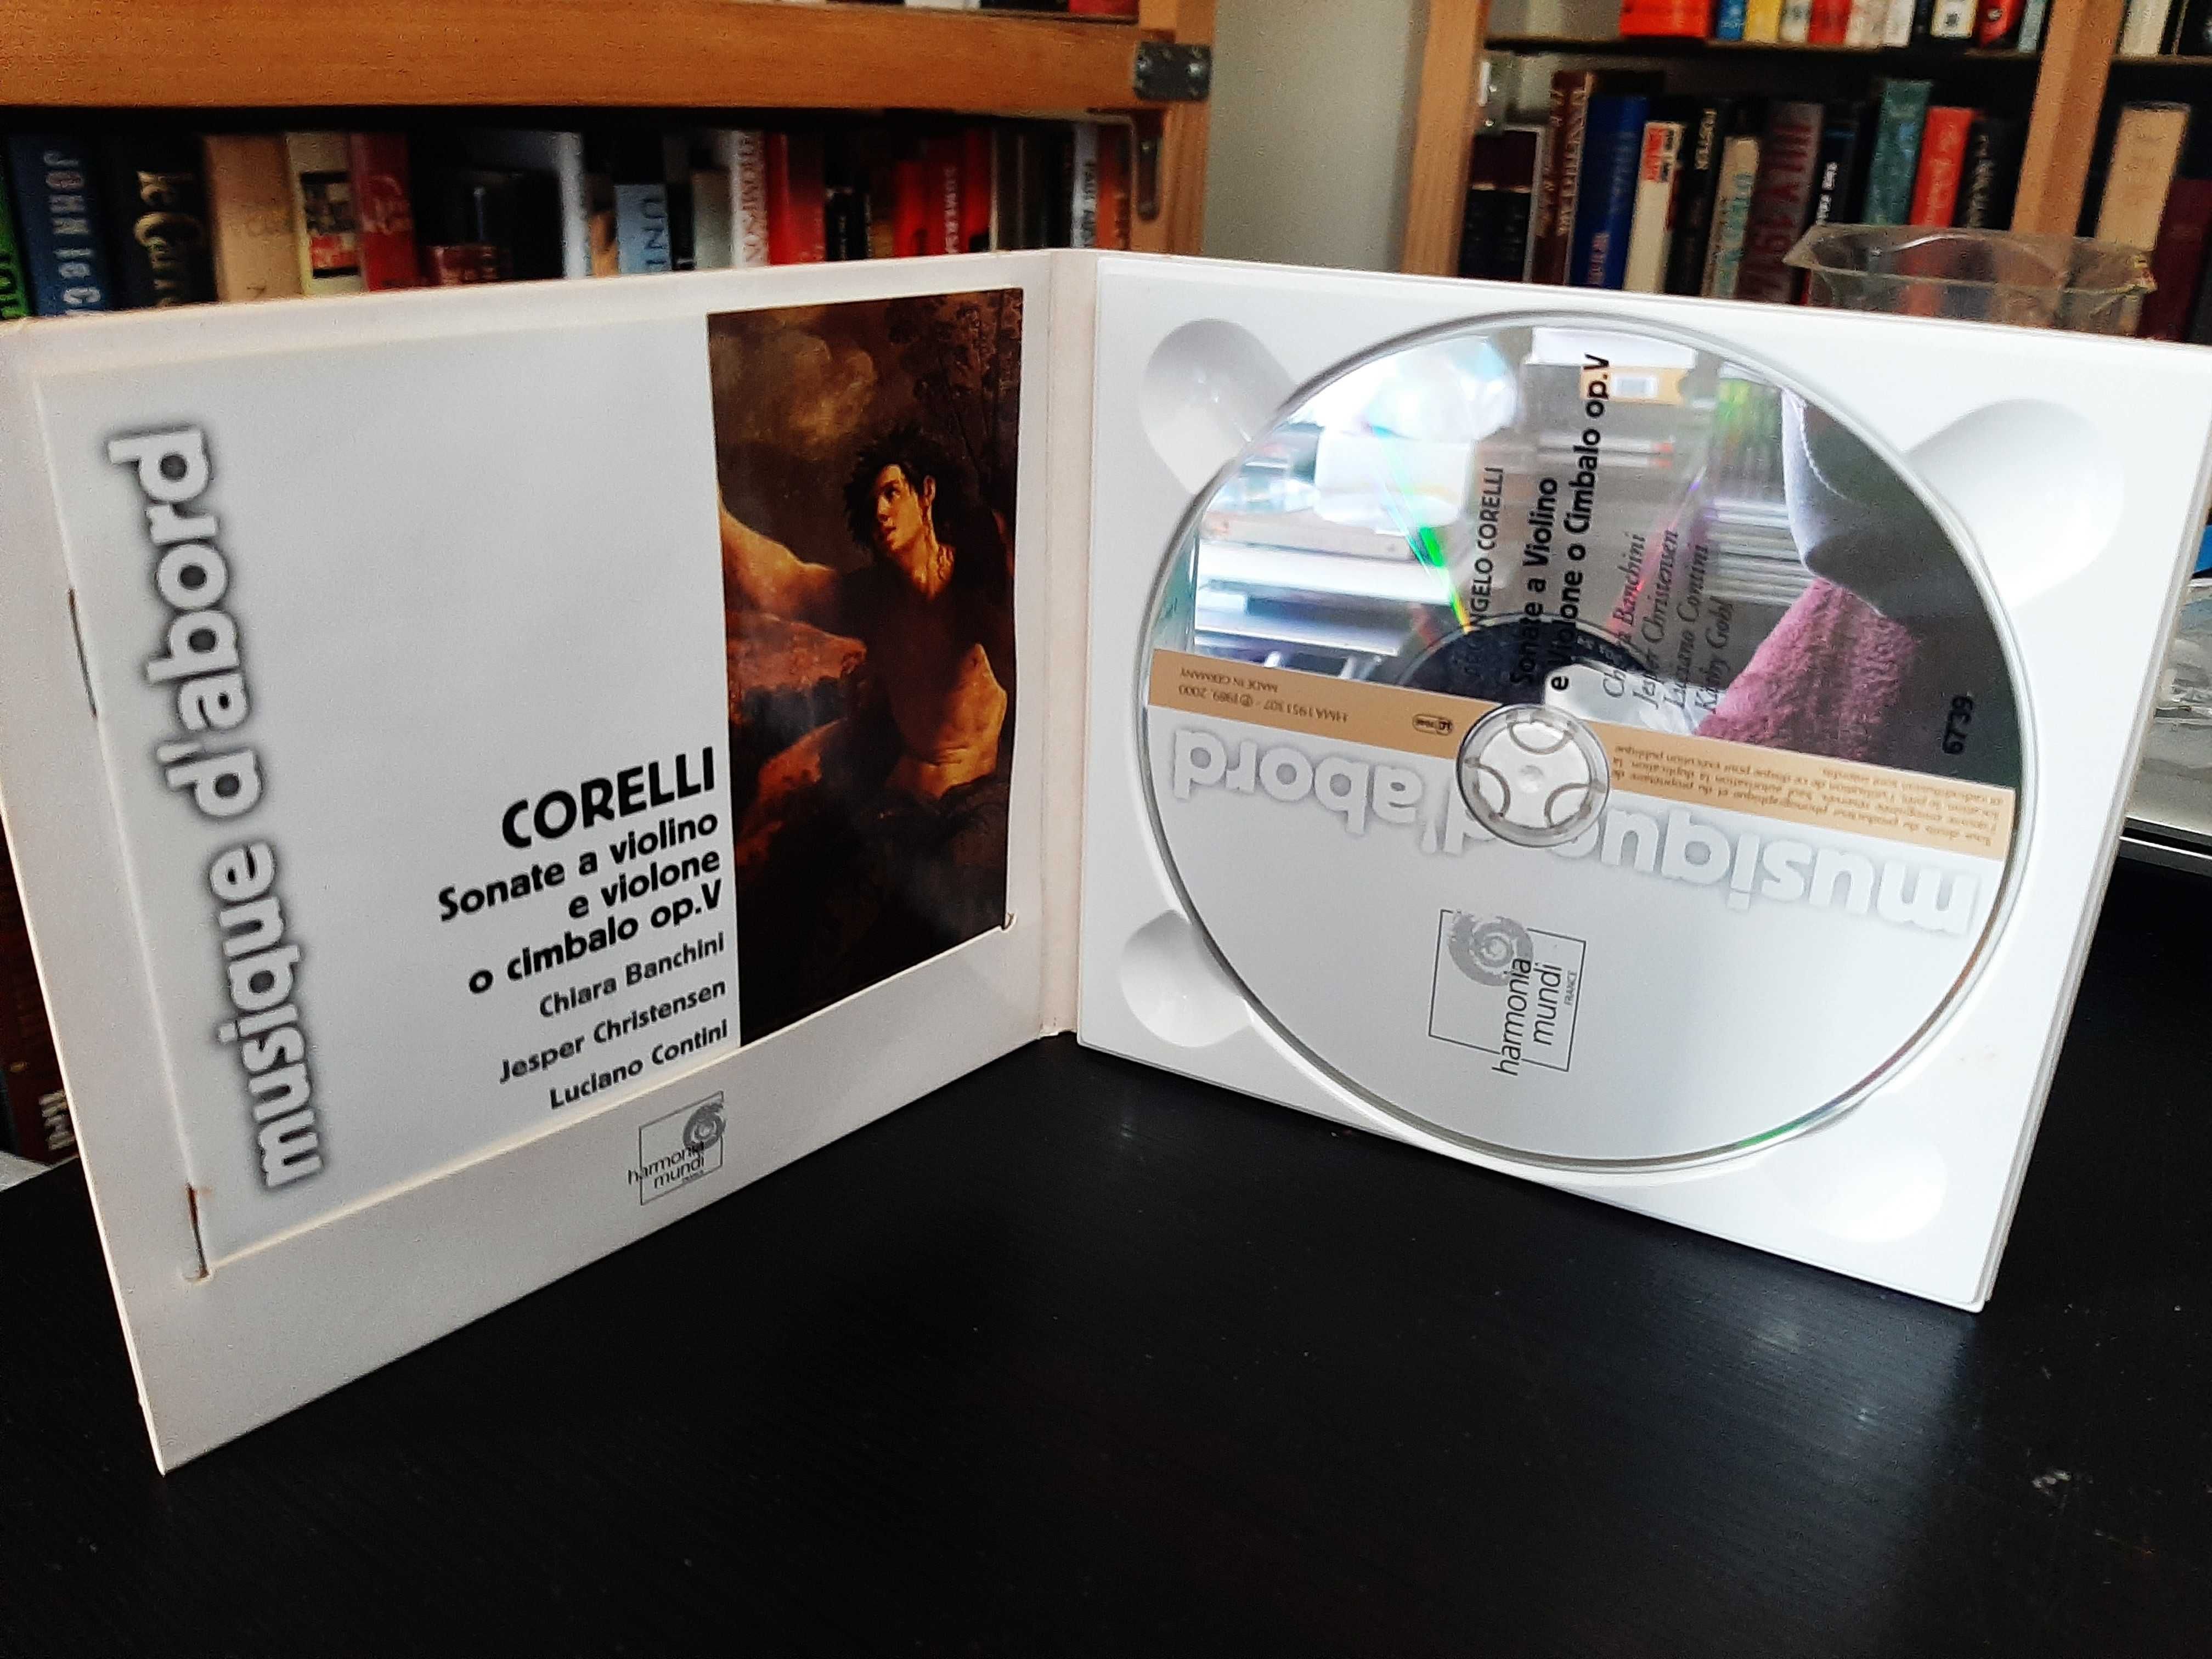 Corelli – Sonate a Violino e Violone o Cimbalo – Chiara Banchini